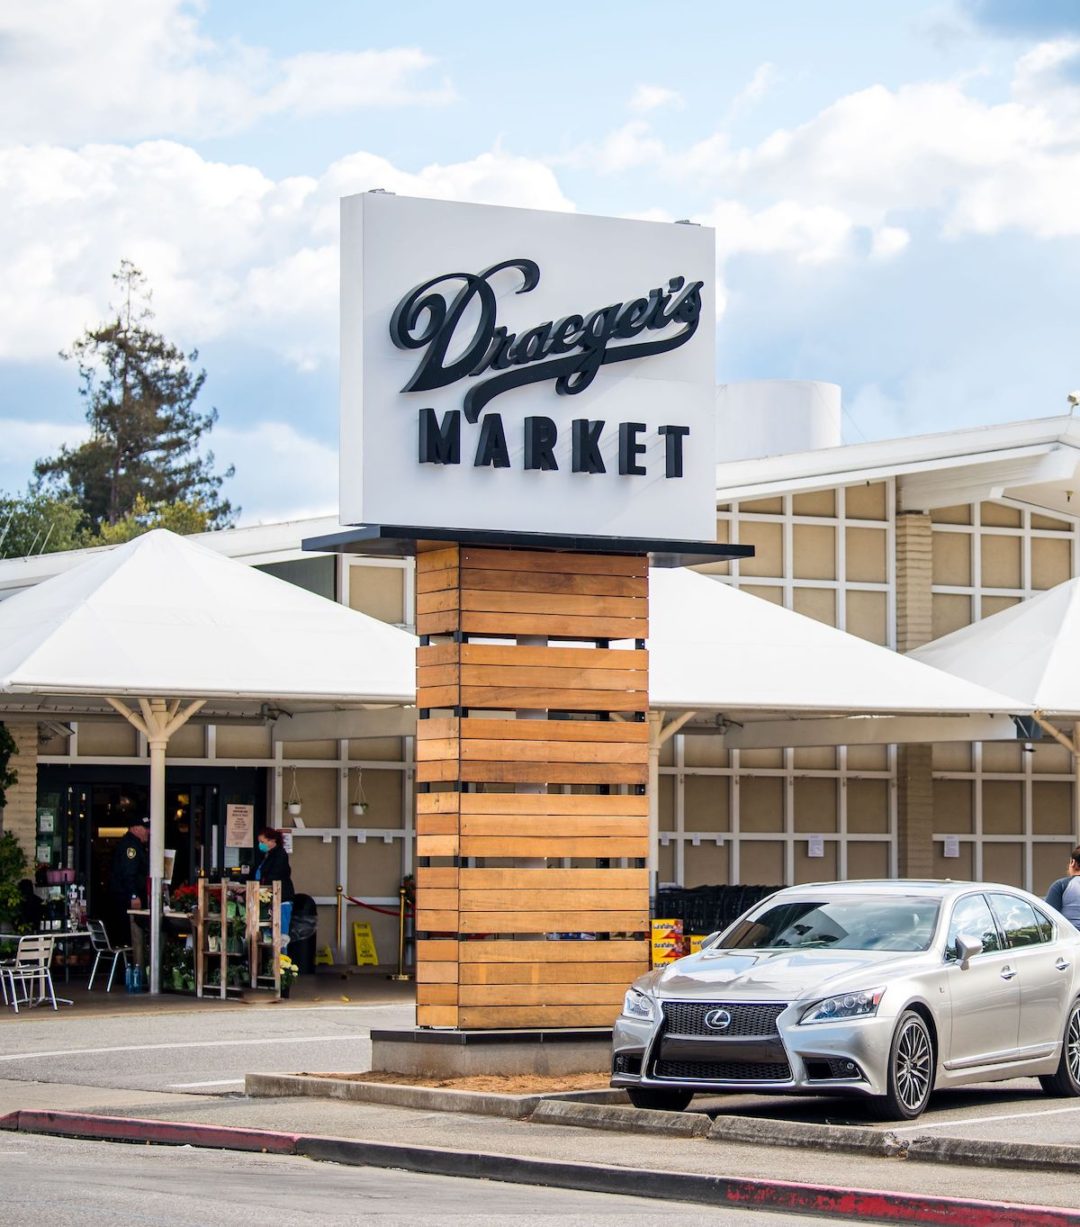 Draegers Market – Los Altos, CA